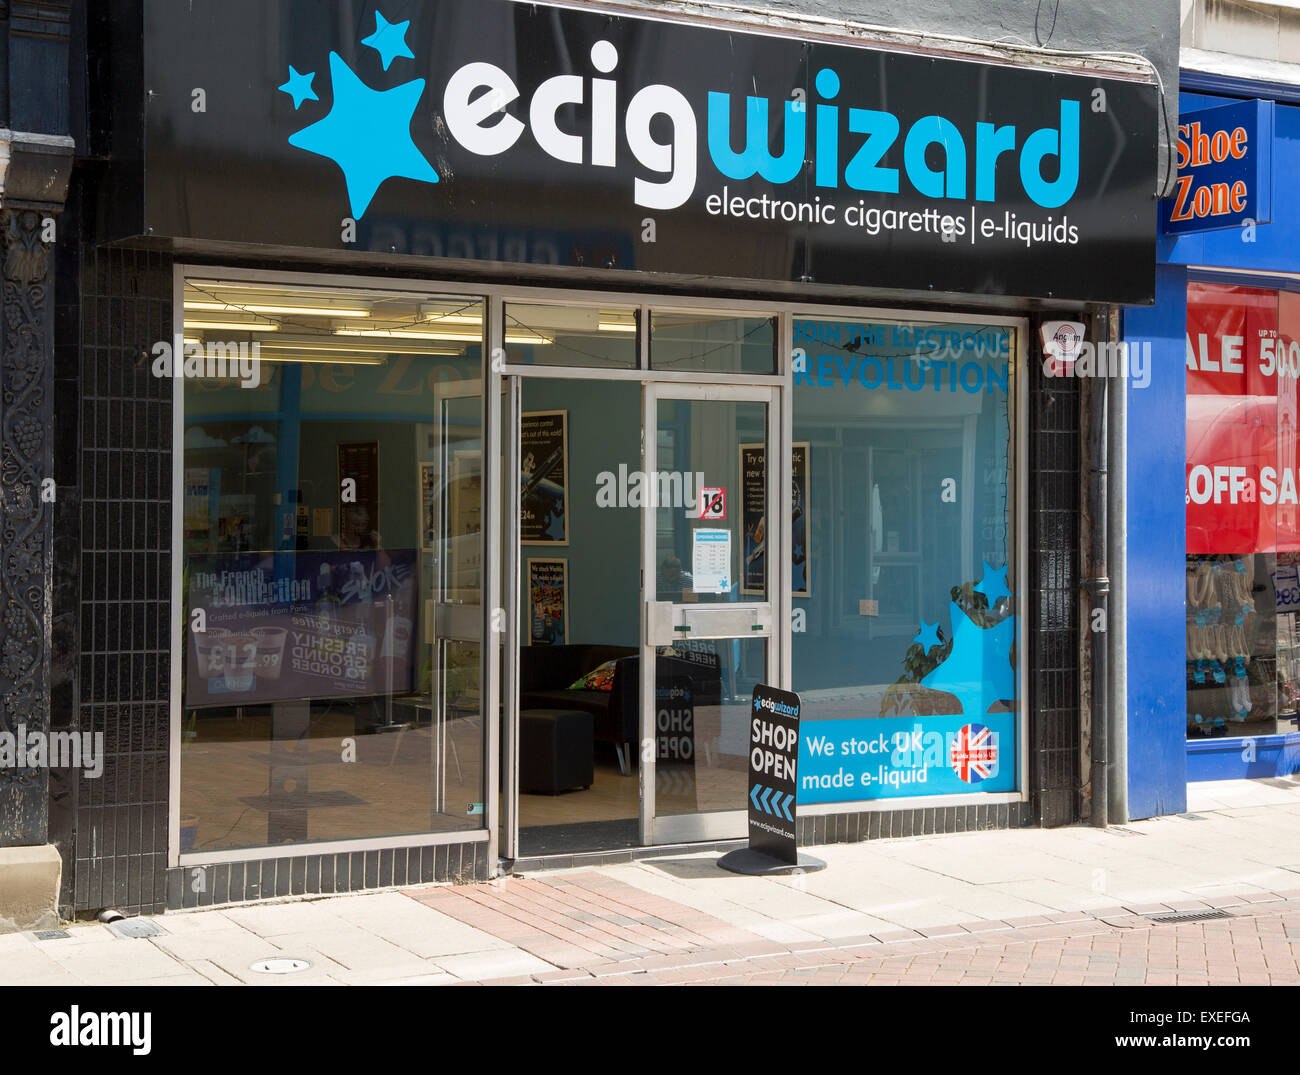 Spécialiste e-cigarette et e-shop de liquides dans le centre d'Ipswich, Suffolk, Angleterre, RU Banque D'Images